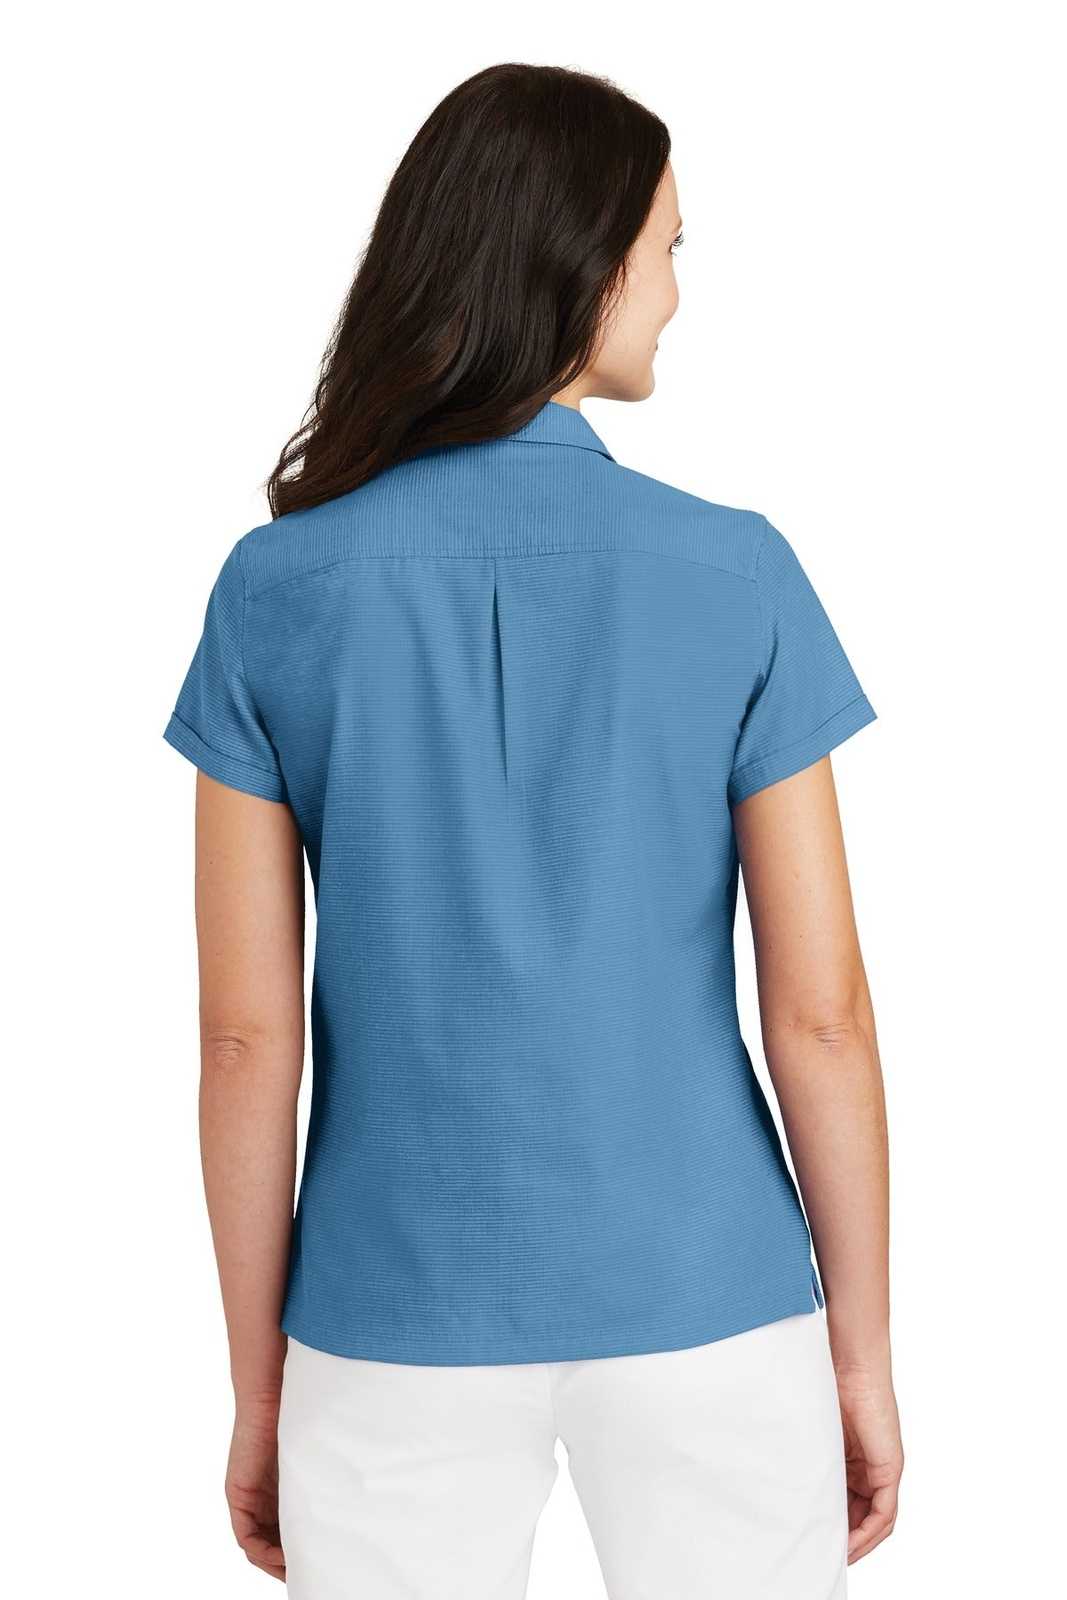 Port Authority L662 Ladies Textured Camp Shirt - Celadon - HIT a Double - 2